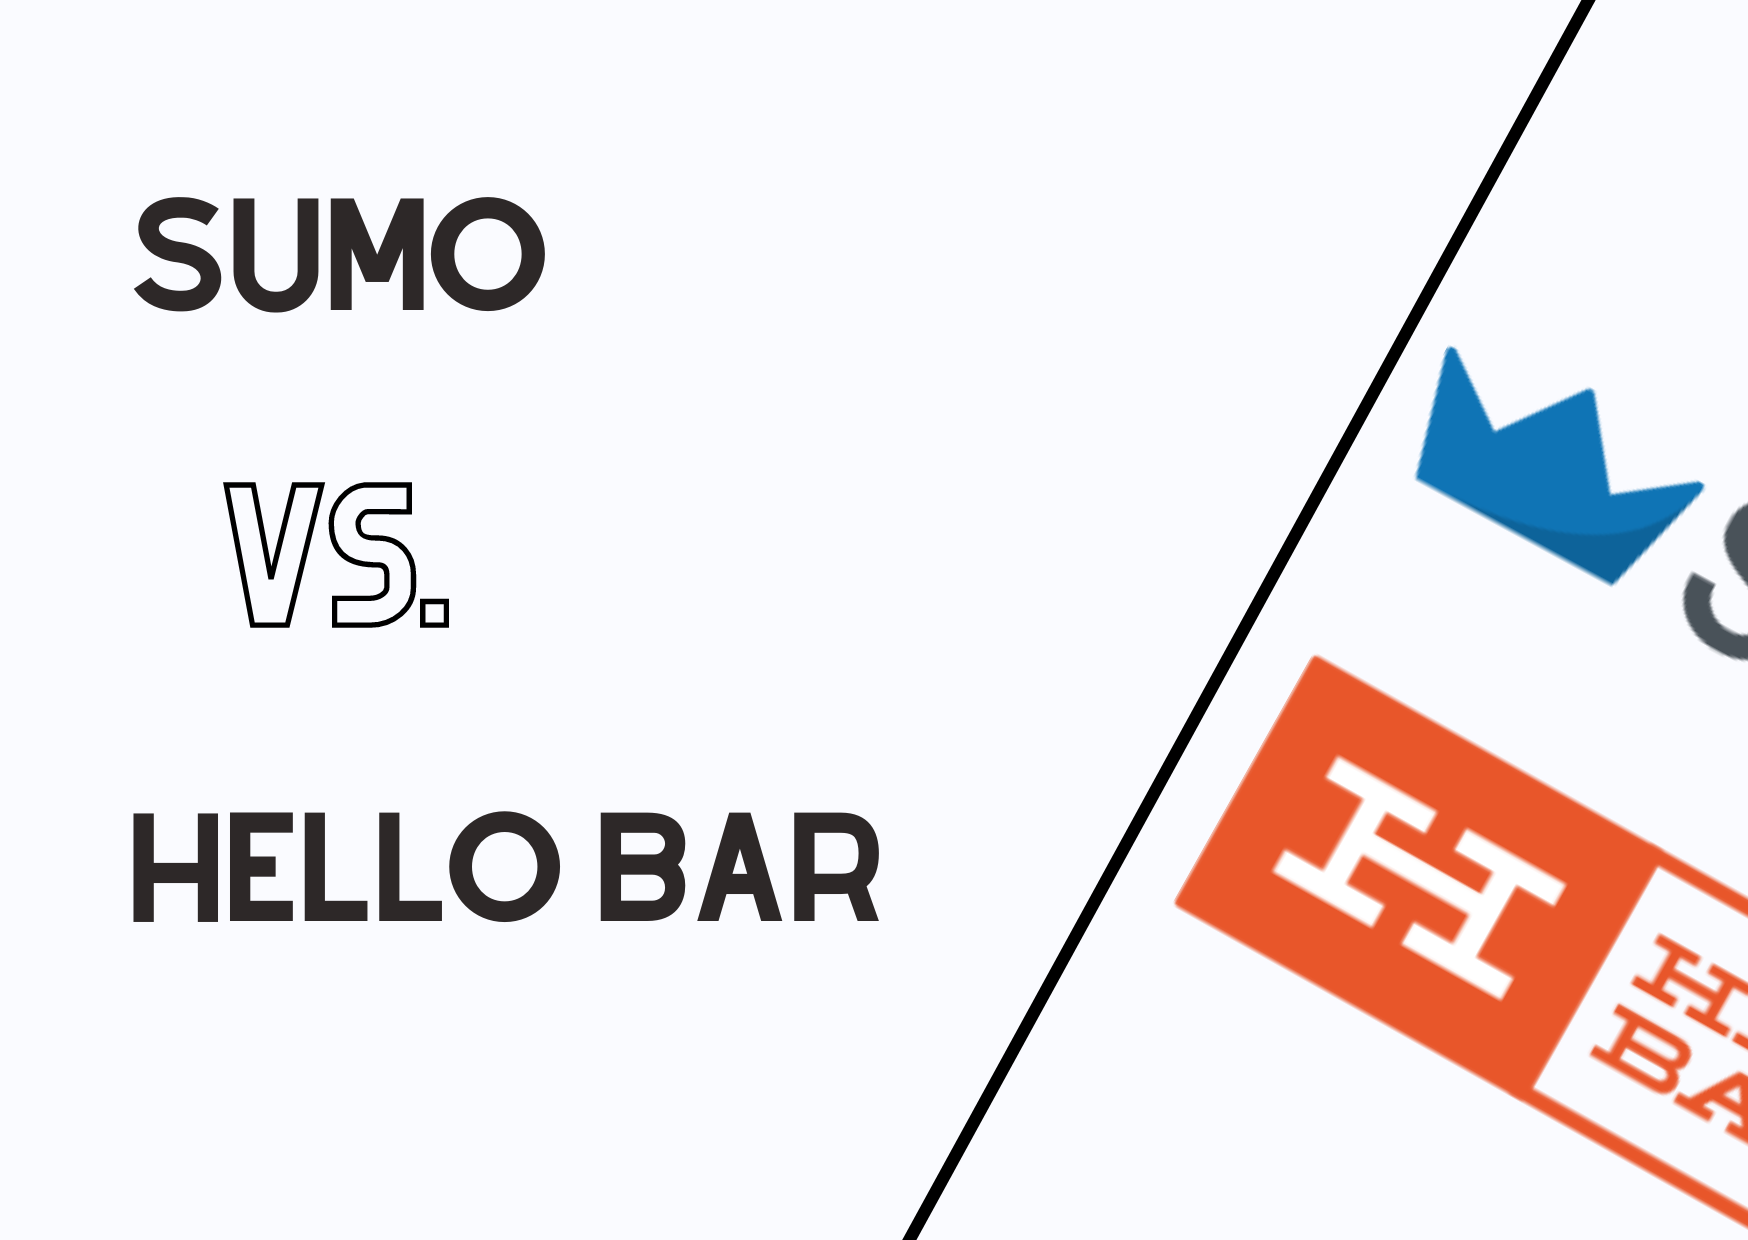 the comparison of Sumo vs Hello Bar banner